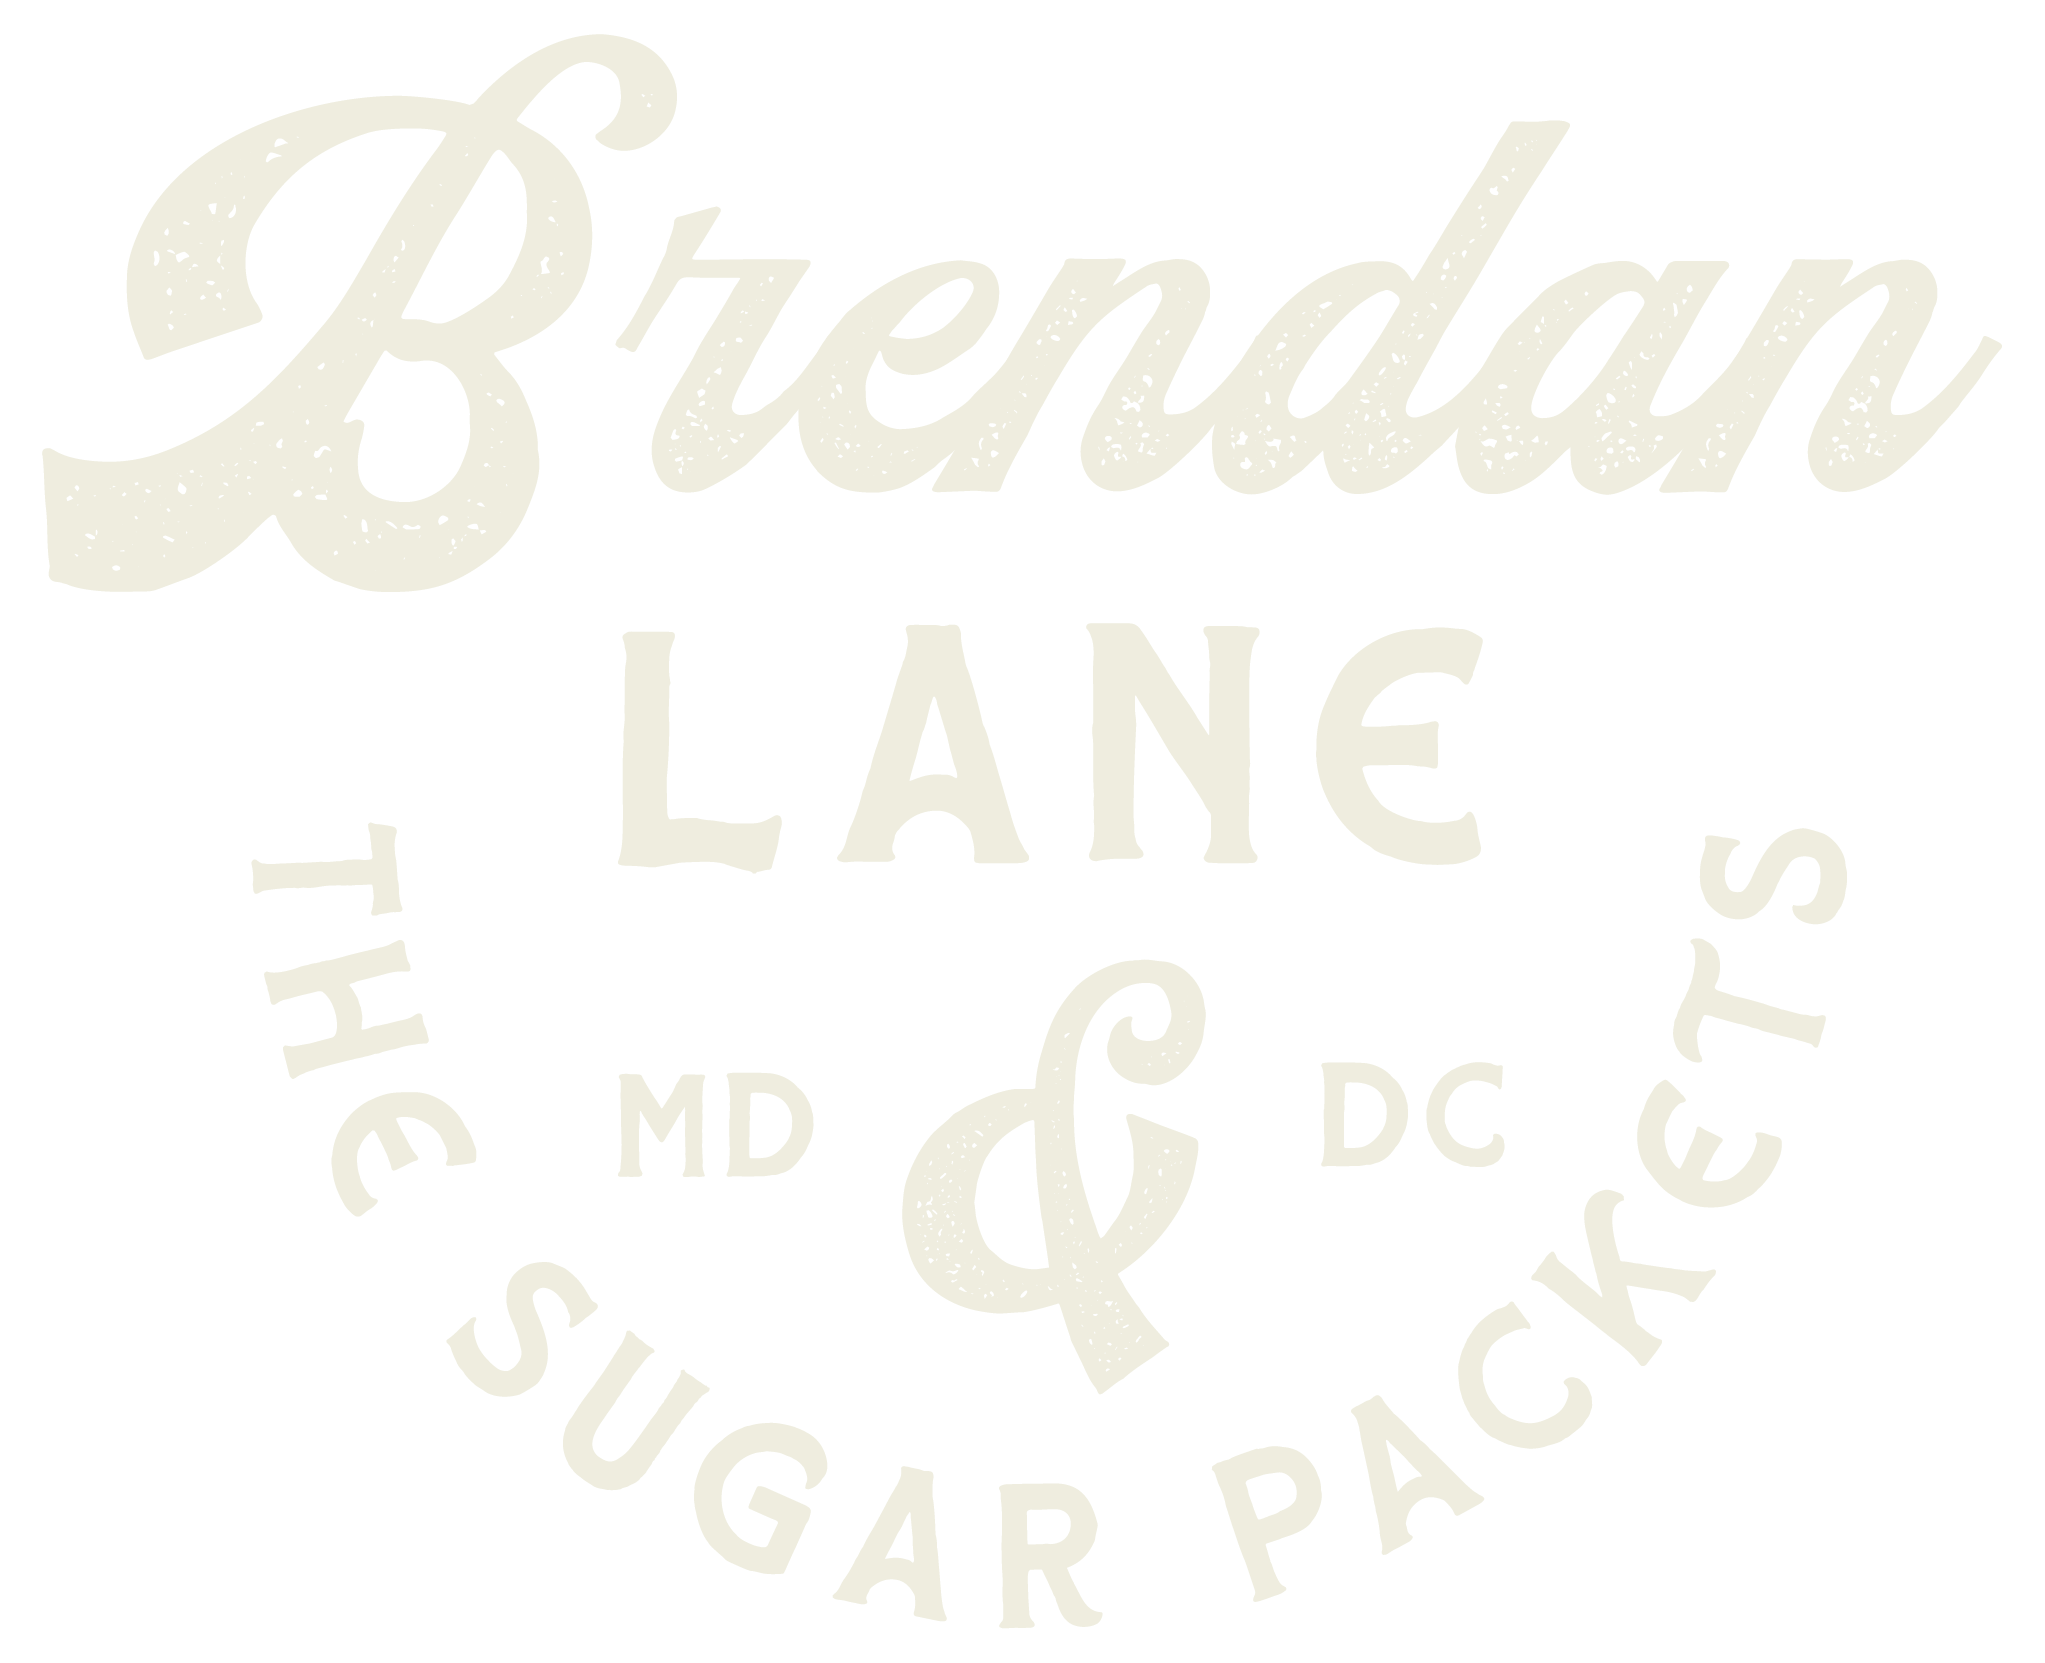 Brendan Lane